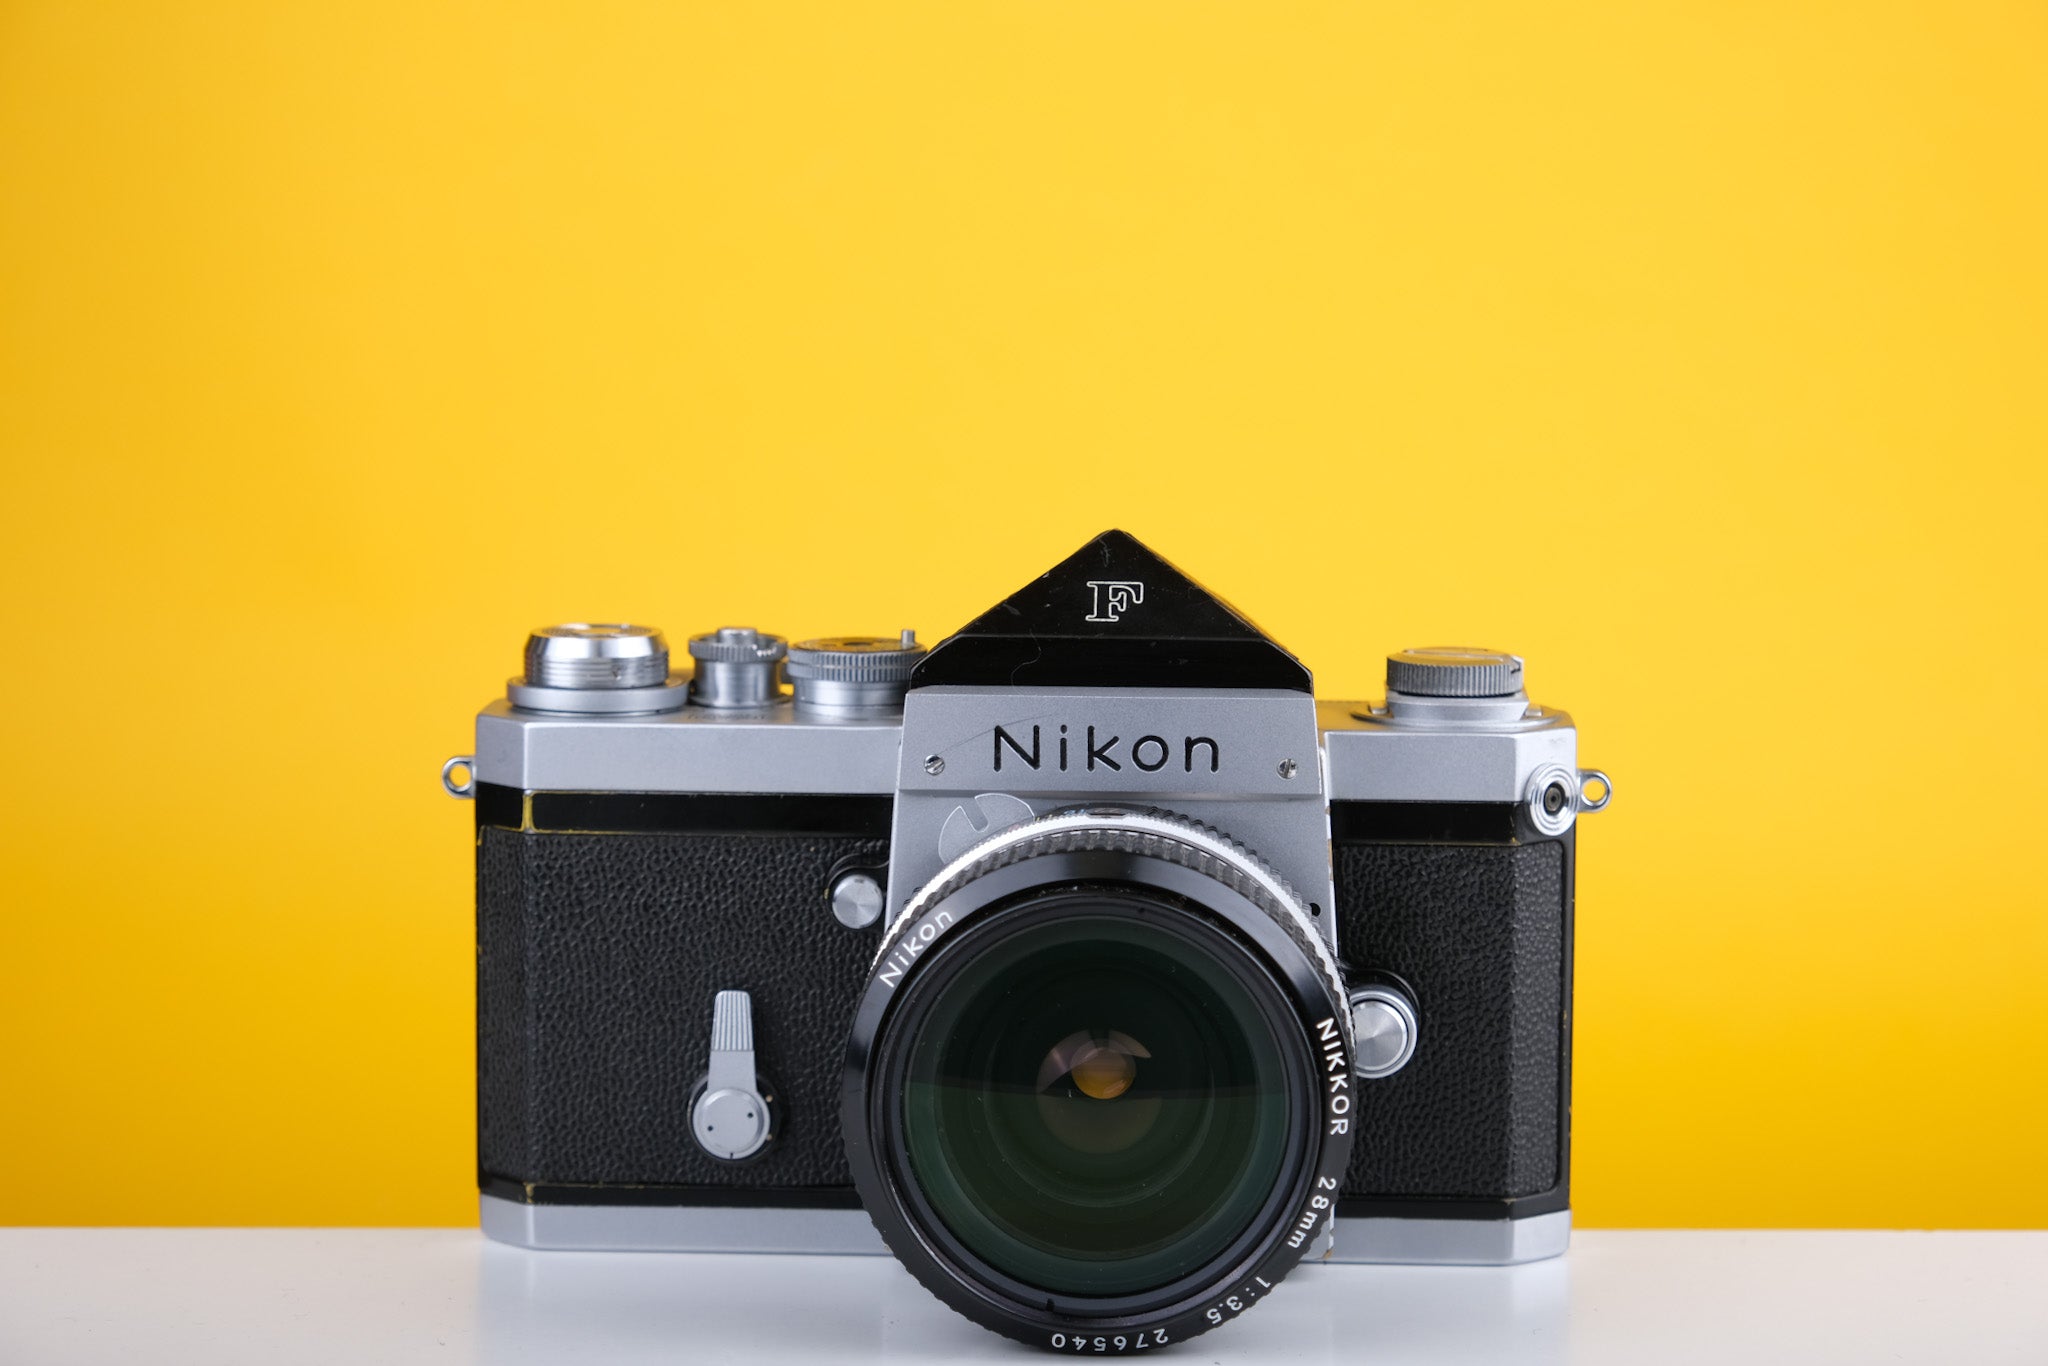 Nikon F 35mm SLR Film Camera With Nikkor 28mm f3.5 Lens